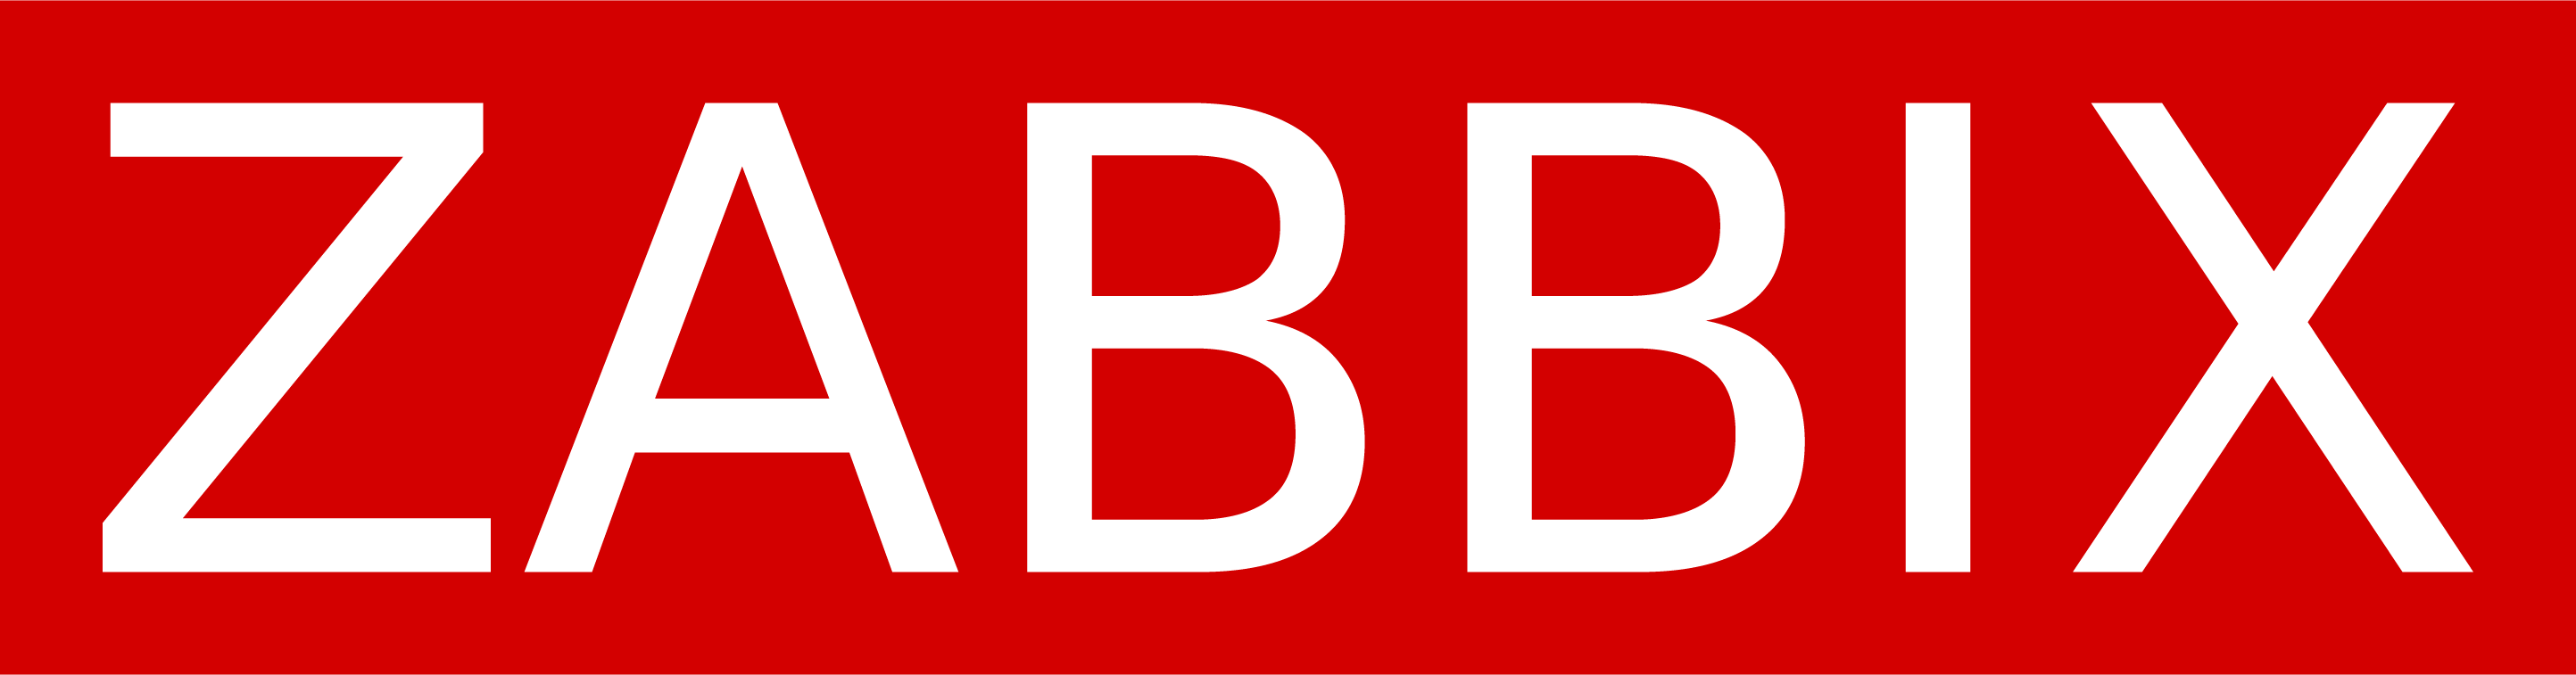 Zabbix Logo png